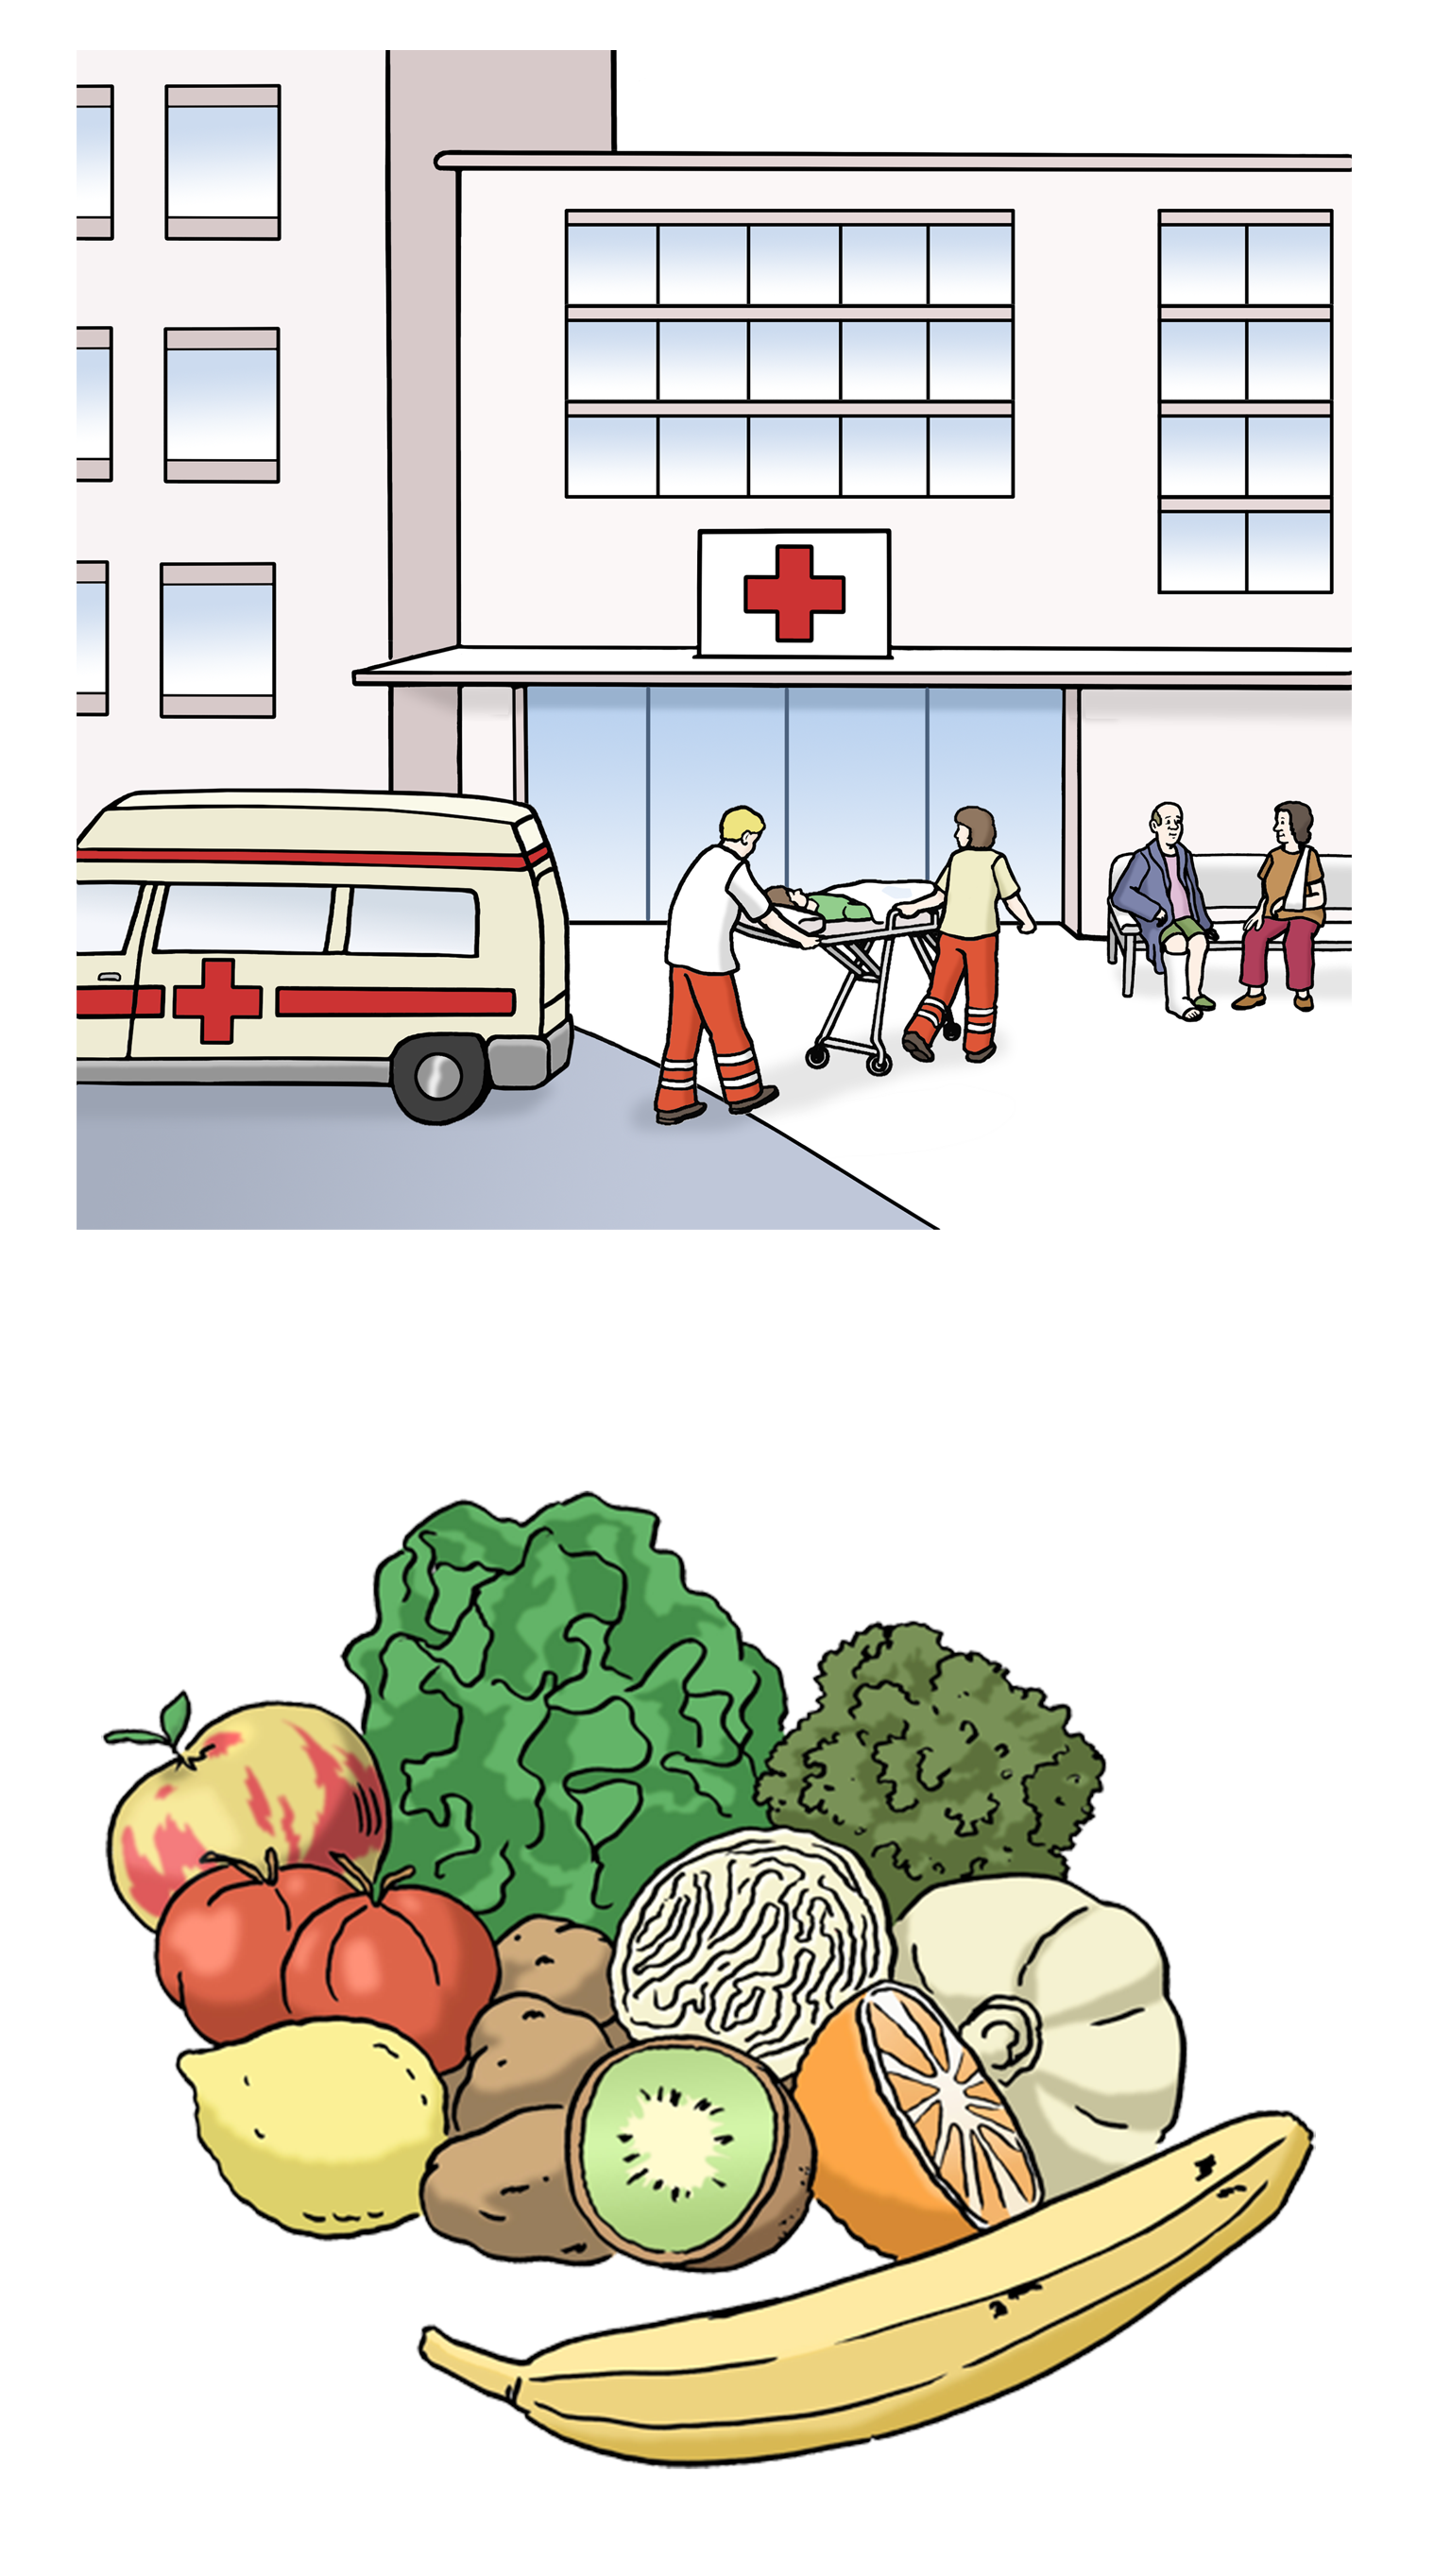 Bild mit 2 Grafiken: Oben die Abbildung eines Krankenhauses. Darunter Grafik von Obst und Gemüse